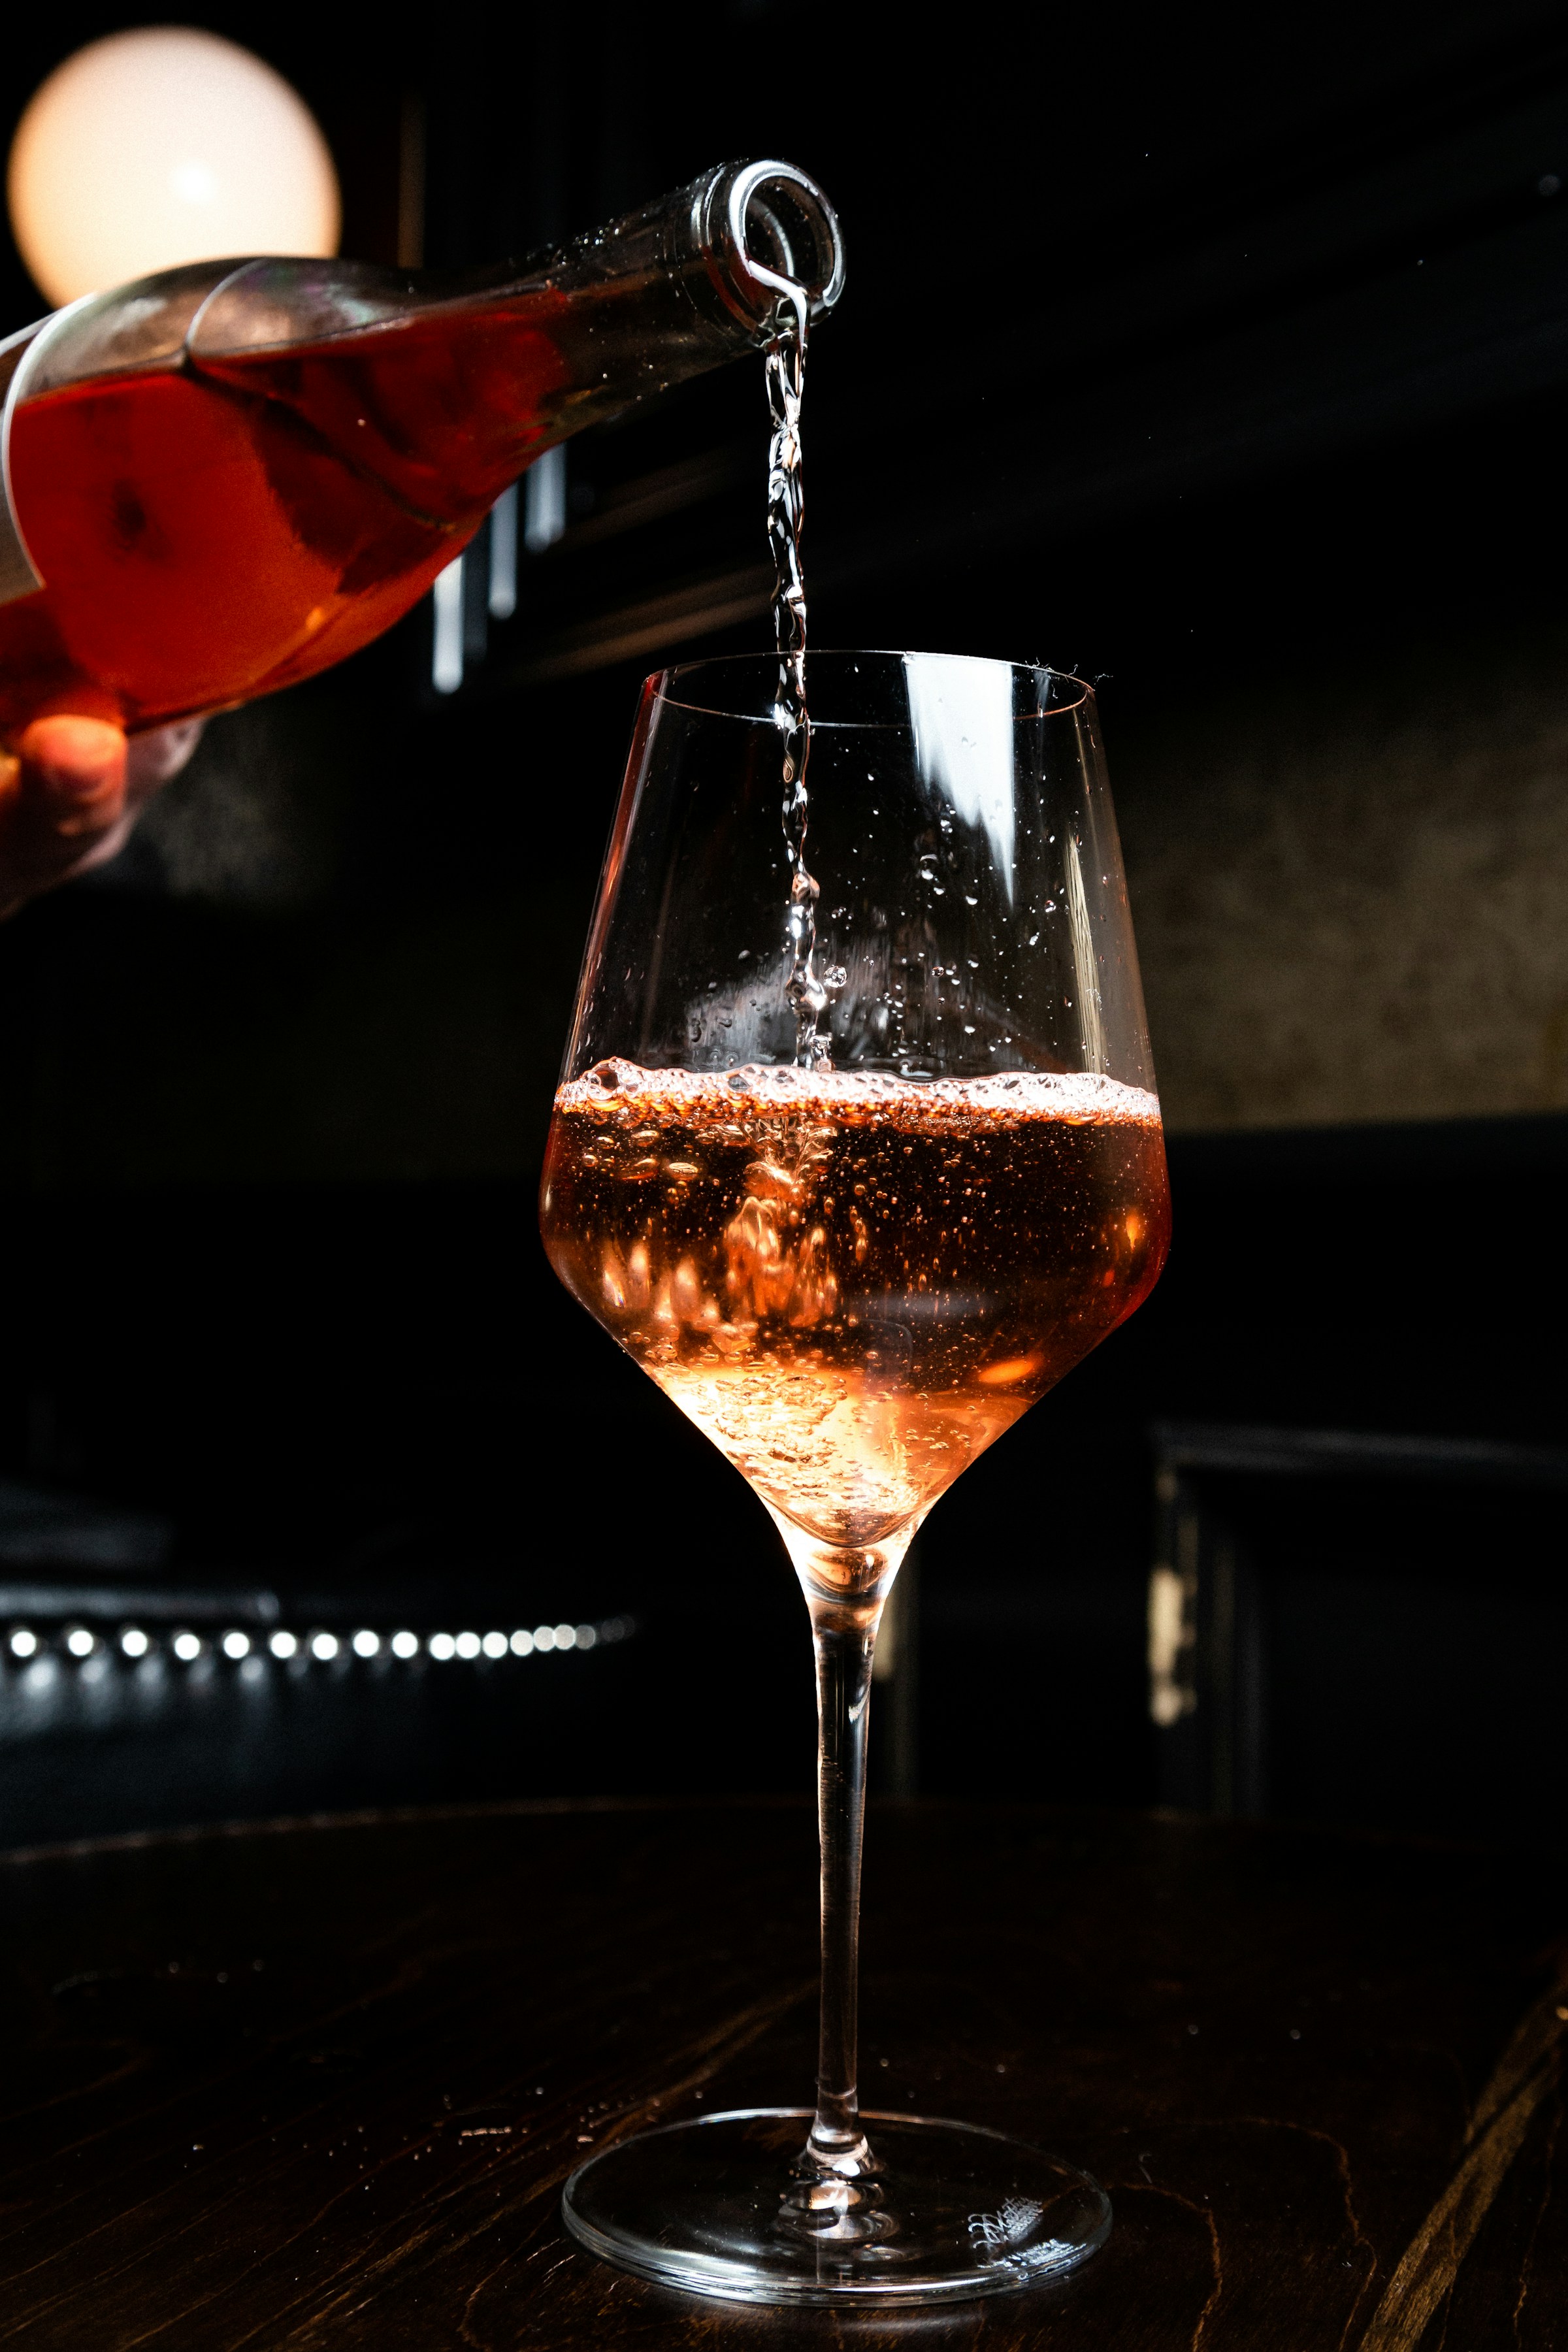 Une personne versant du vin dans un verre | Source : Unsplash